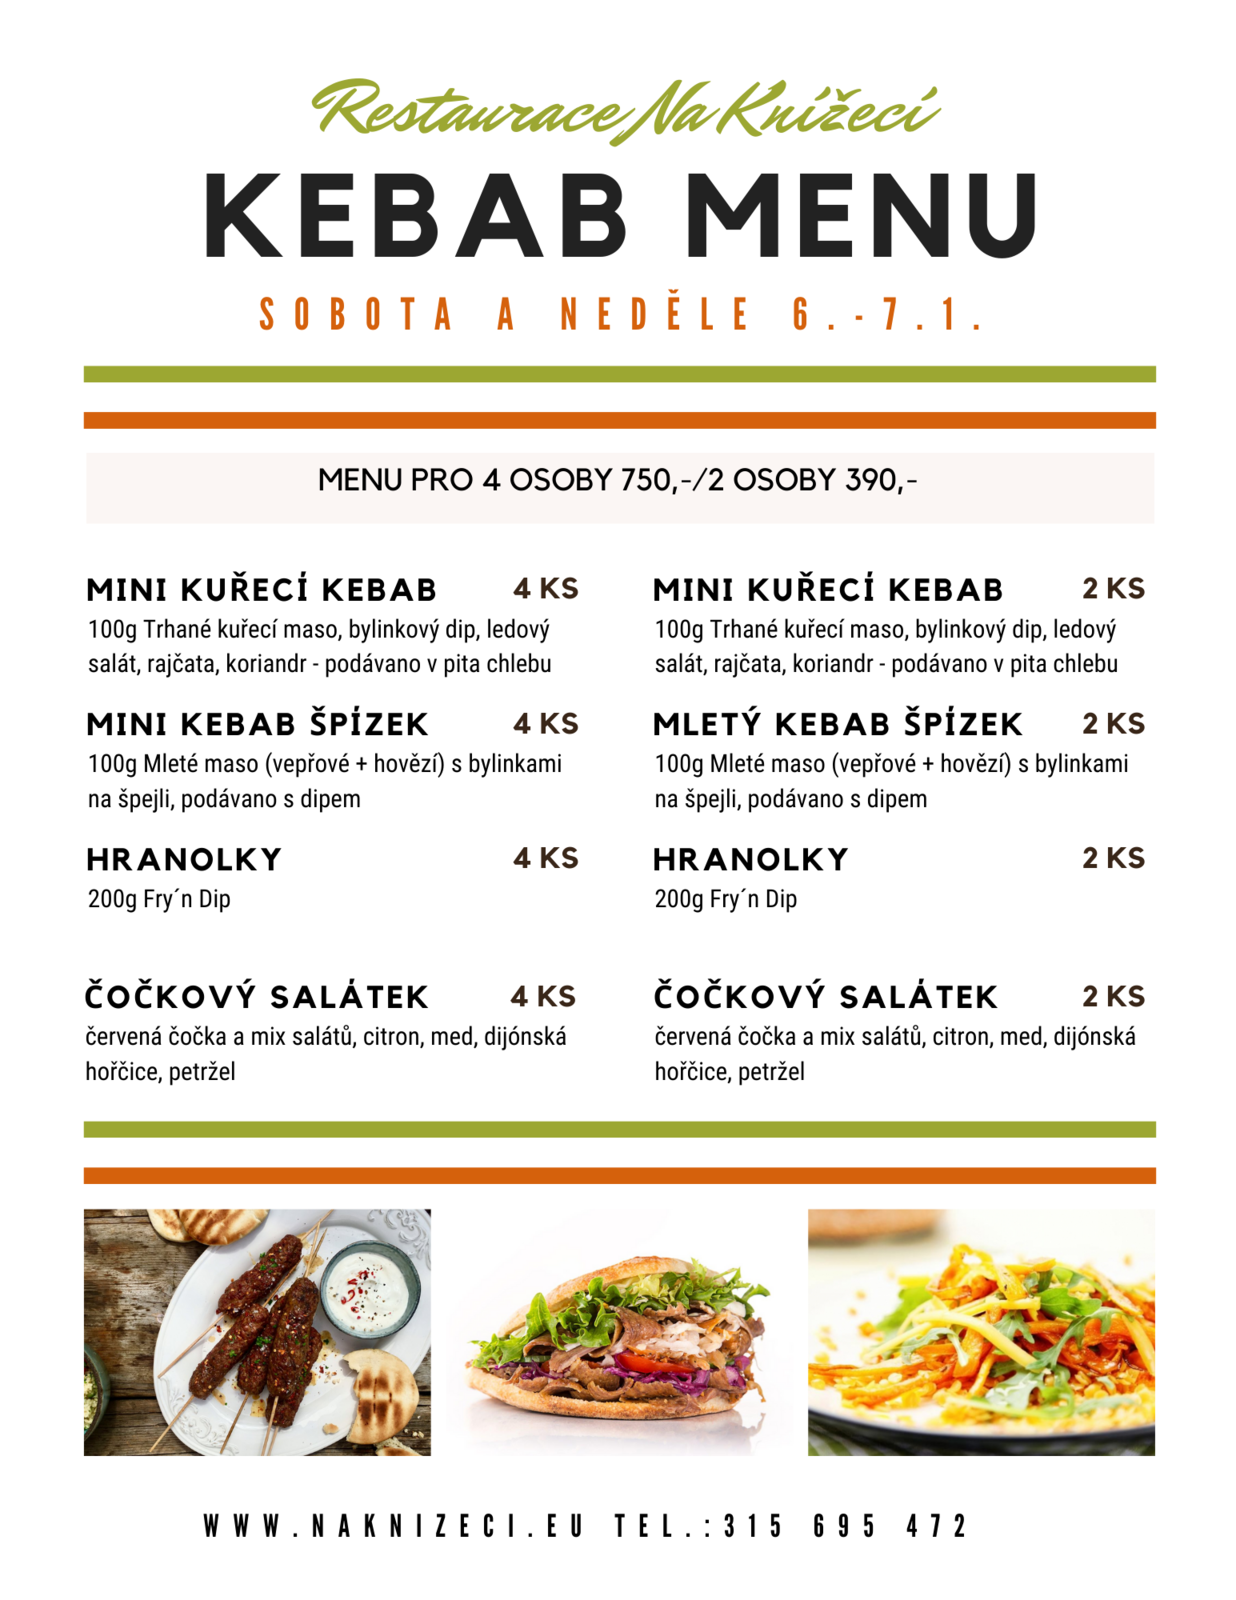 Kebab menu Facebook.png